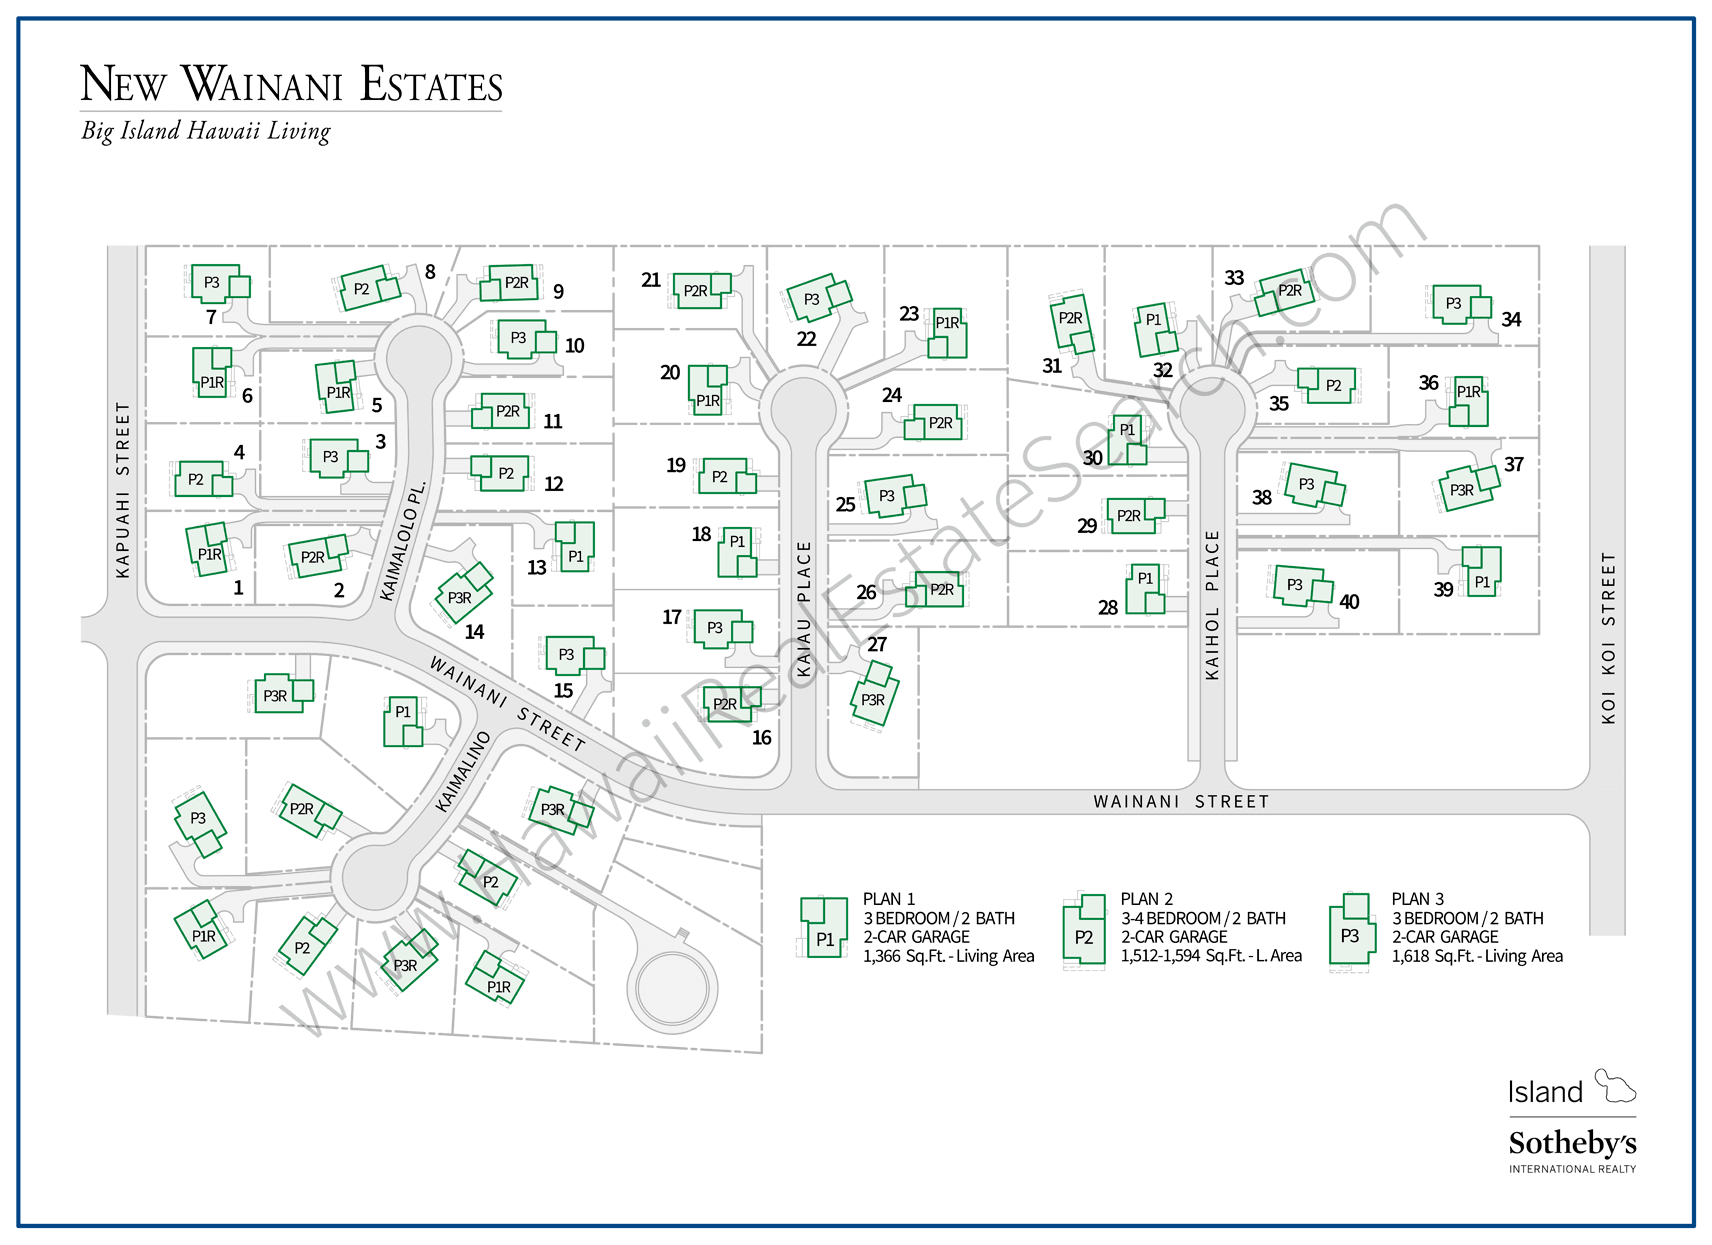 New Wainani Estates Community Map